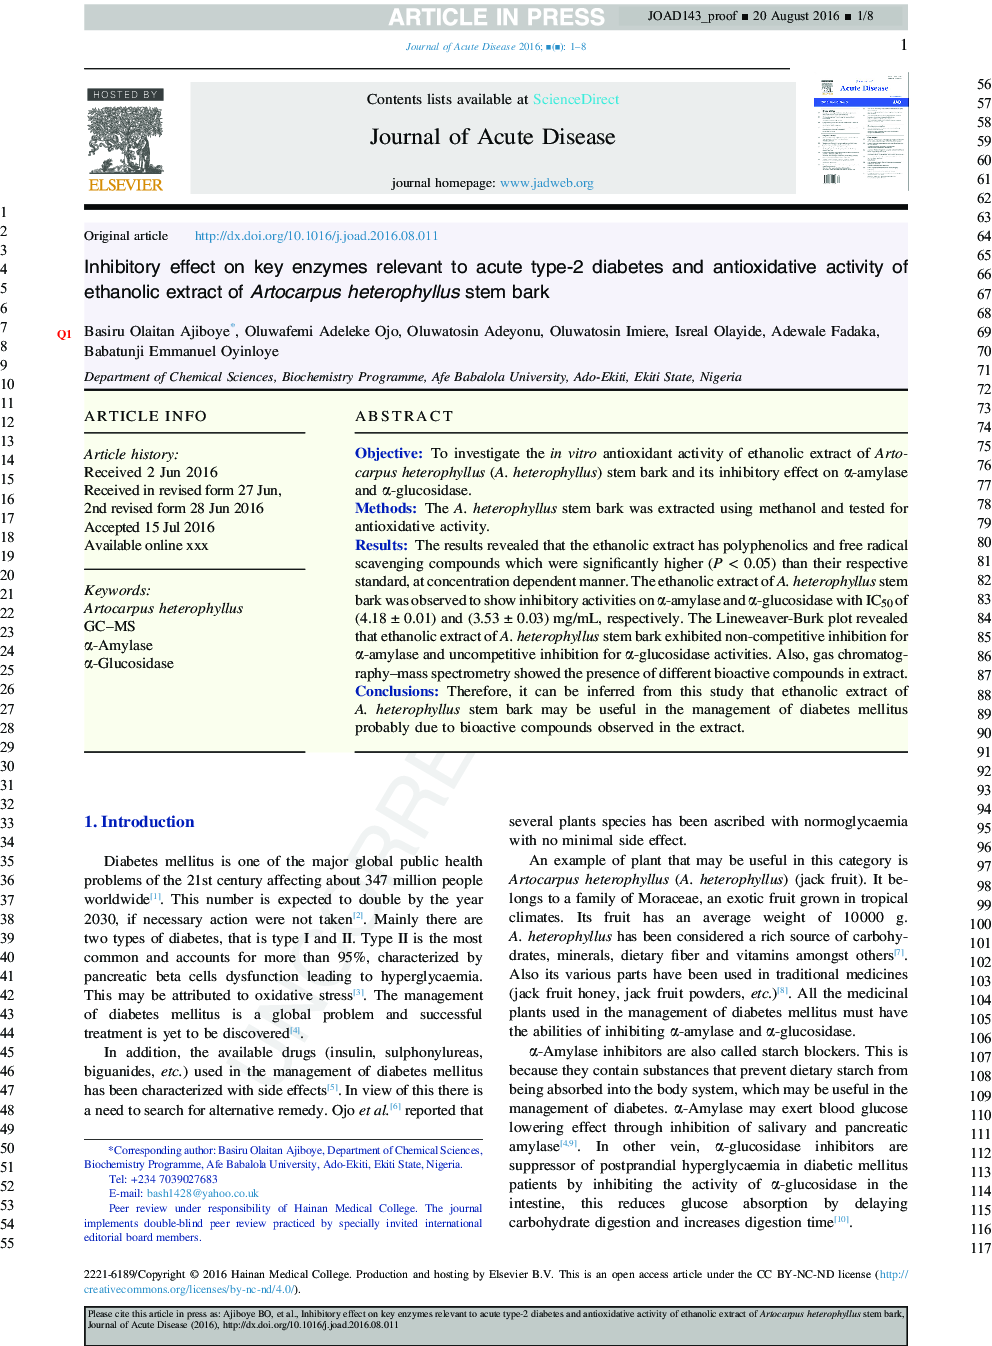 Inhibitory effect on key enzymes relevant to acute type-2 diabetes and antioxidative activity of ethanolic extract of Artocarpus heterophyllus stem bark